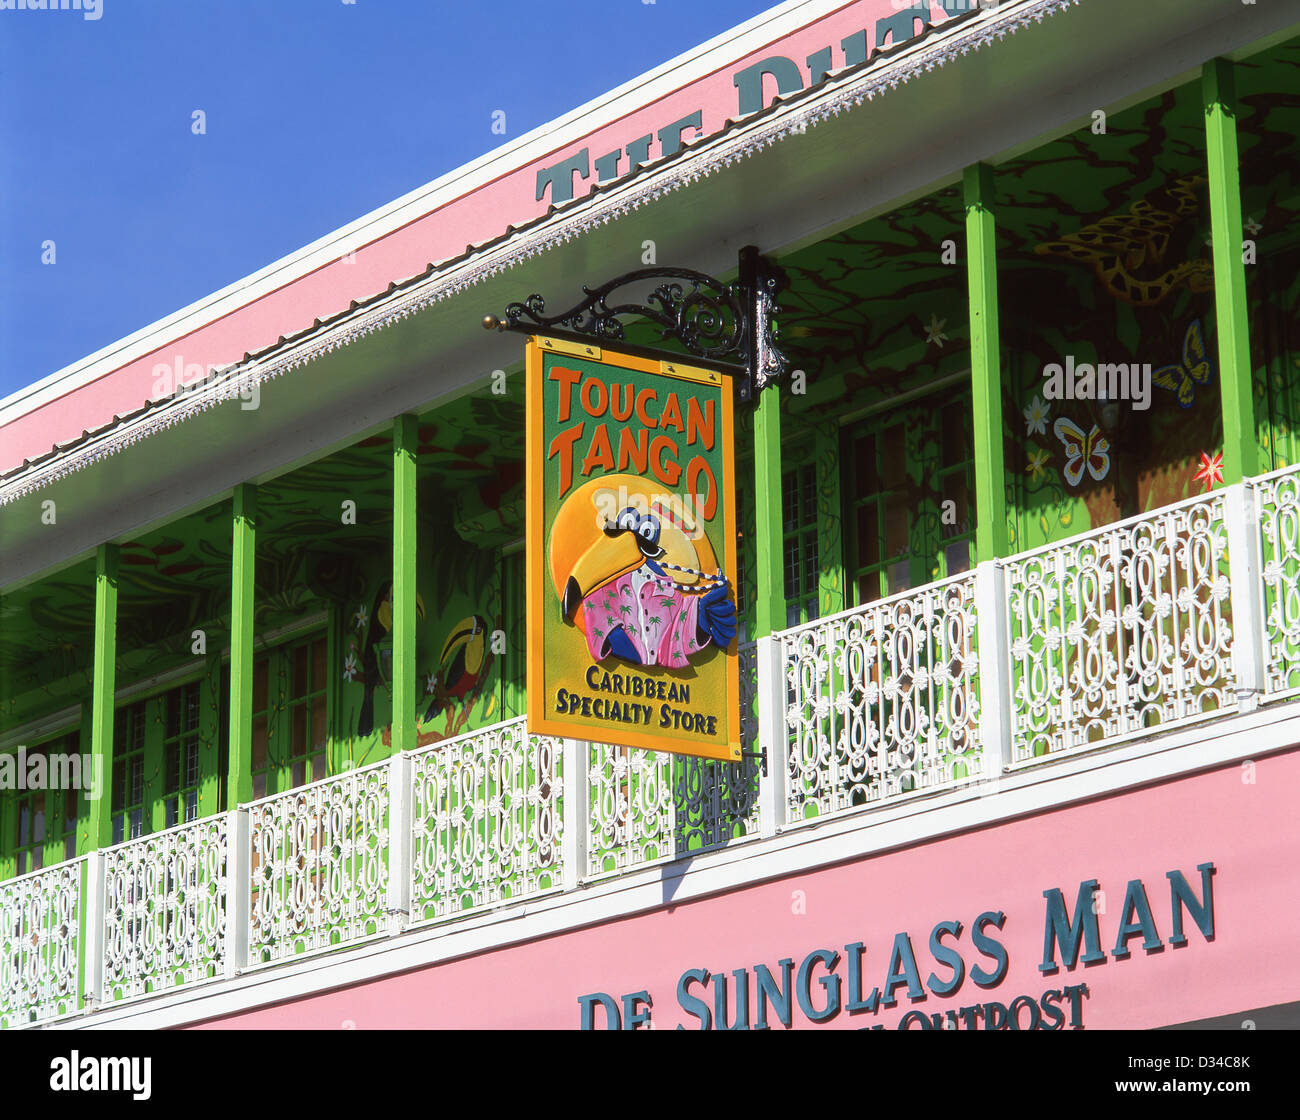 Toucan coloré Tango store se connecter, George Town, Grand Cayman, îles Caïmans, Antilles, Caraïbes Banque D'Images